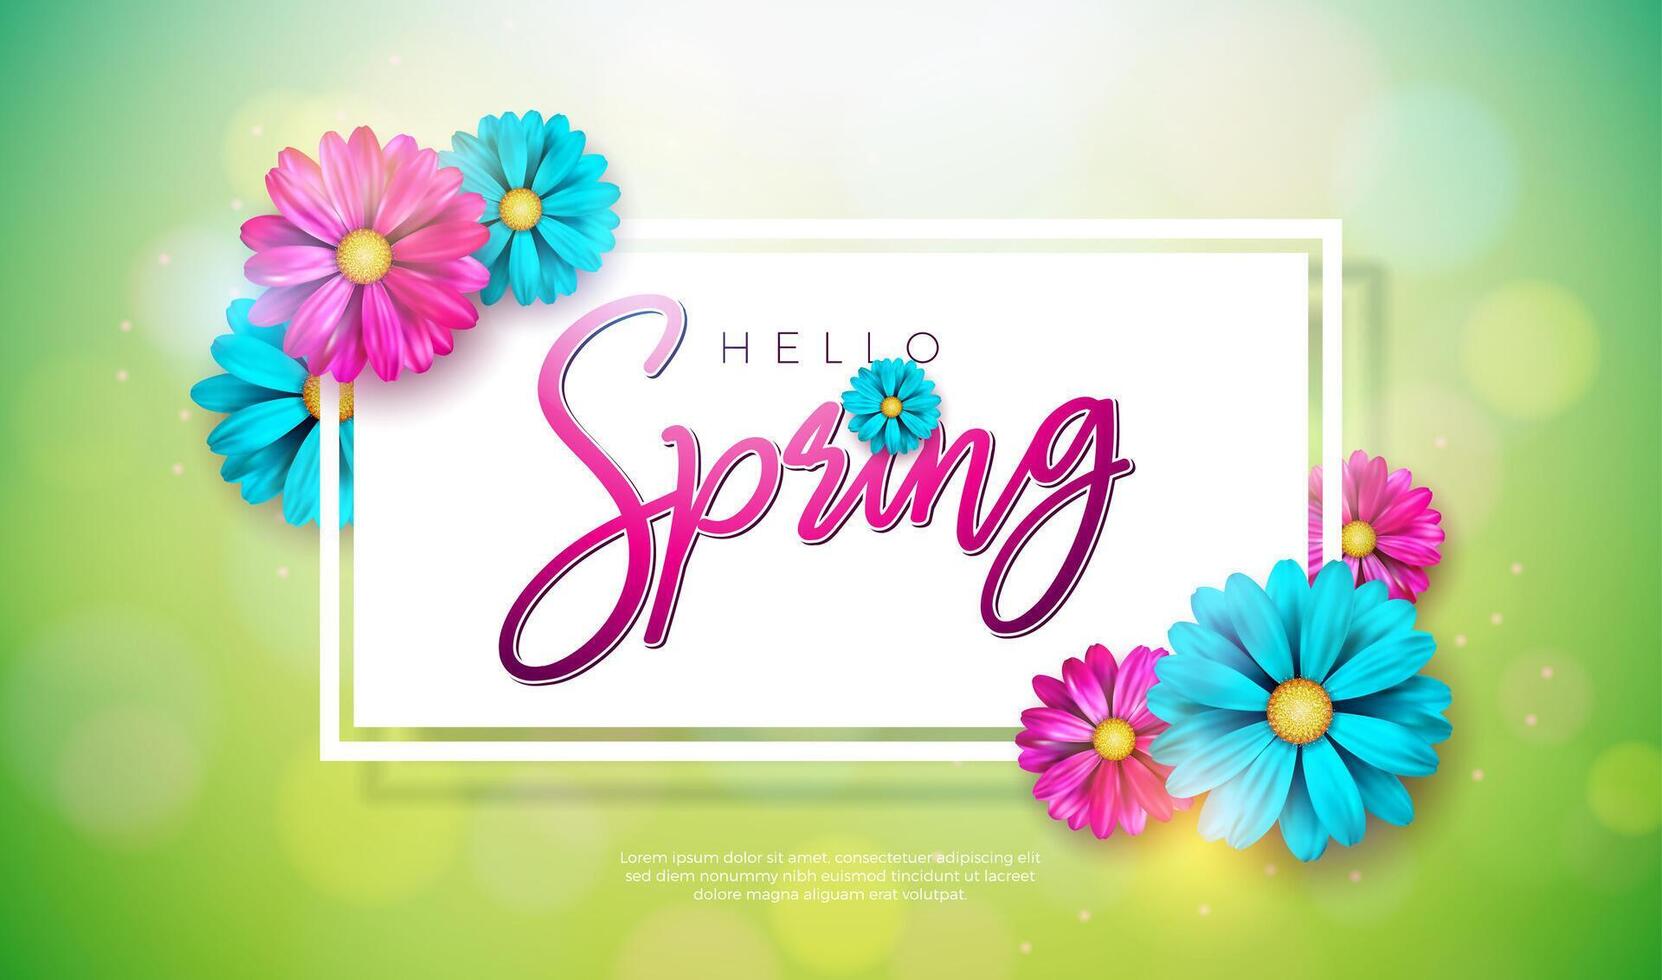 Vektor Illustration auf ein Frühling Natur Thema mit schön bunt Blume auf Grün Hintergrund. Blumen- Design Vorlage mit Typografie Brief zum Banner, Flyer, Einladung, Poster oder Gruß Karte.